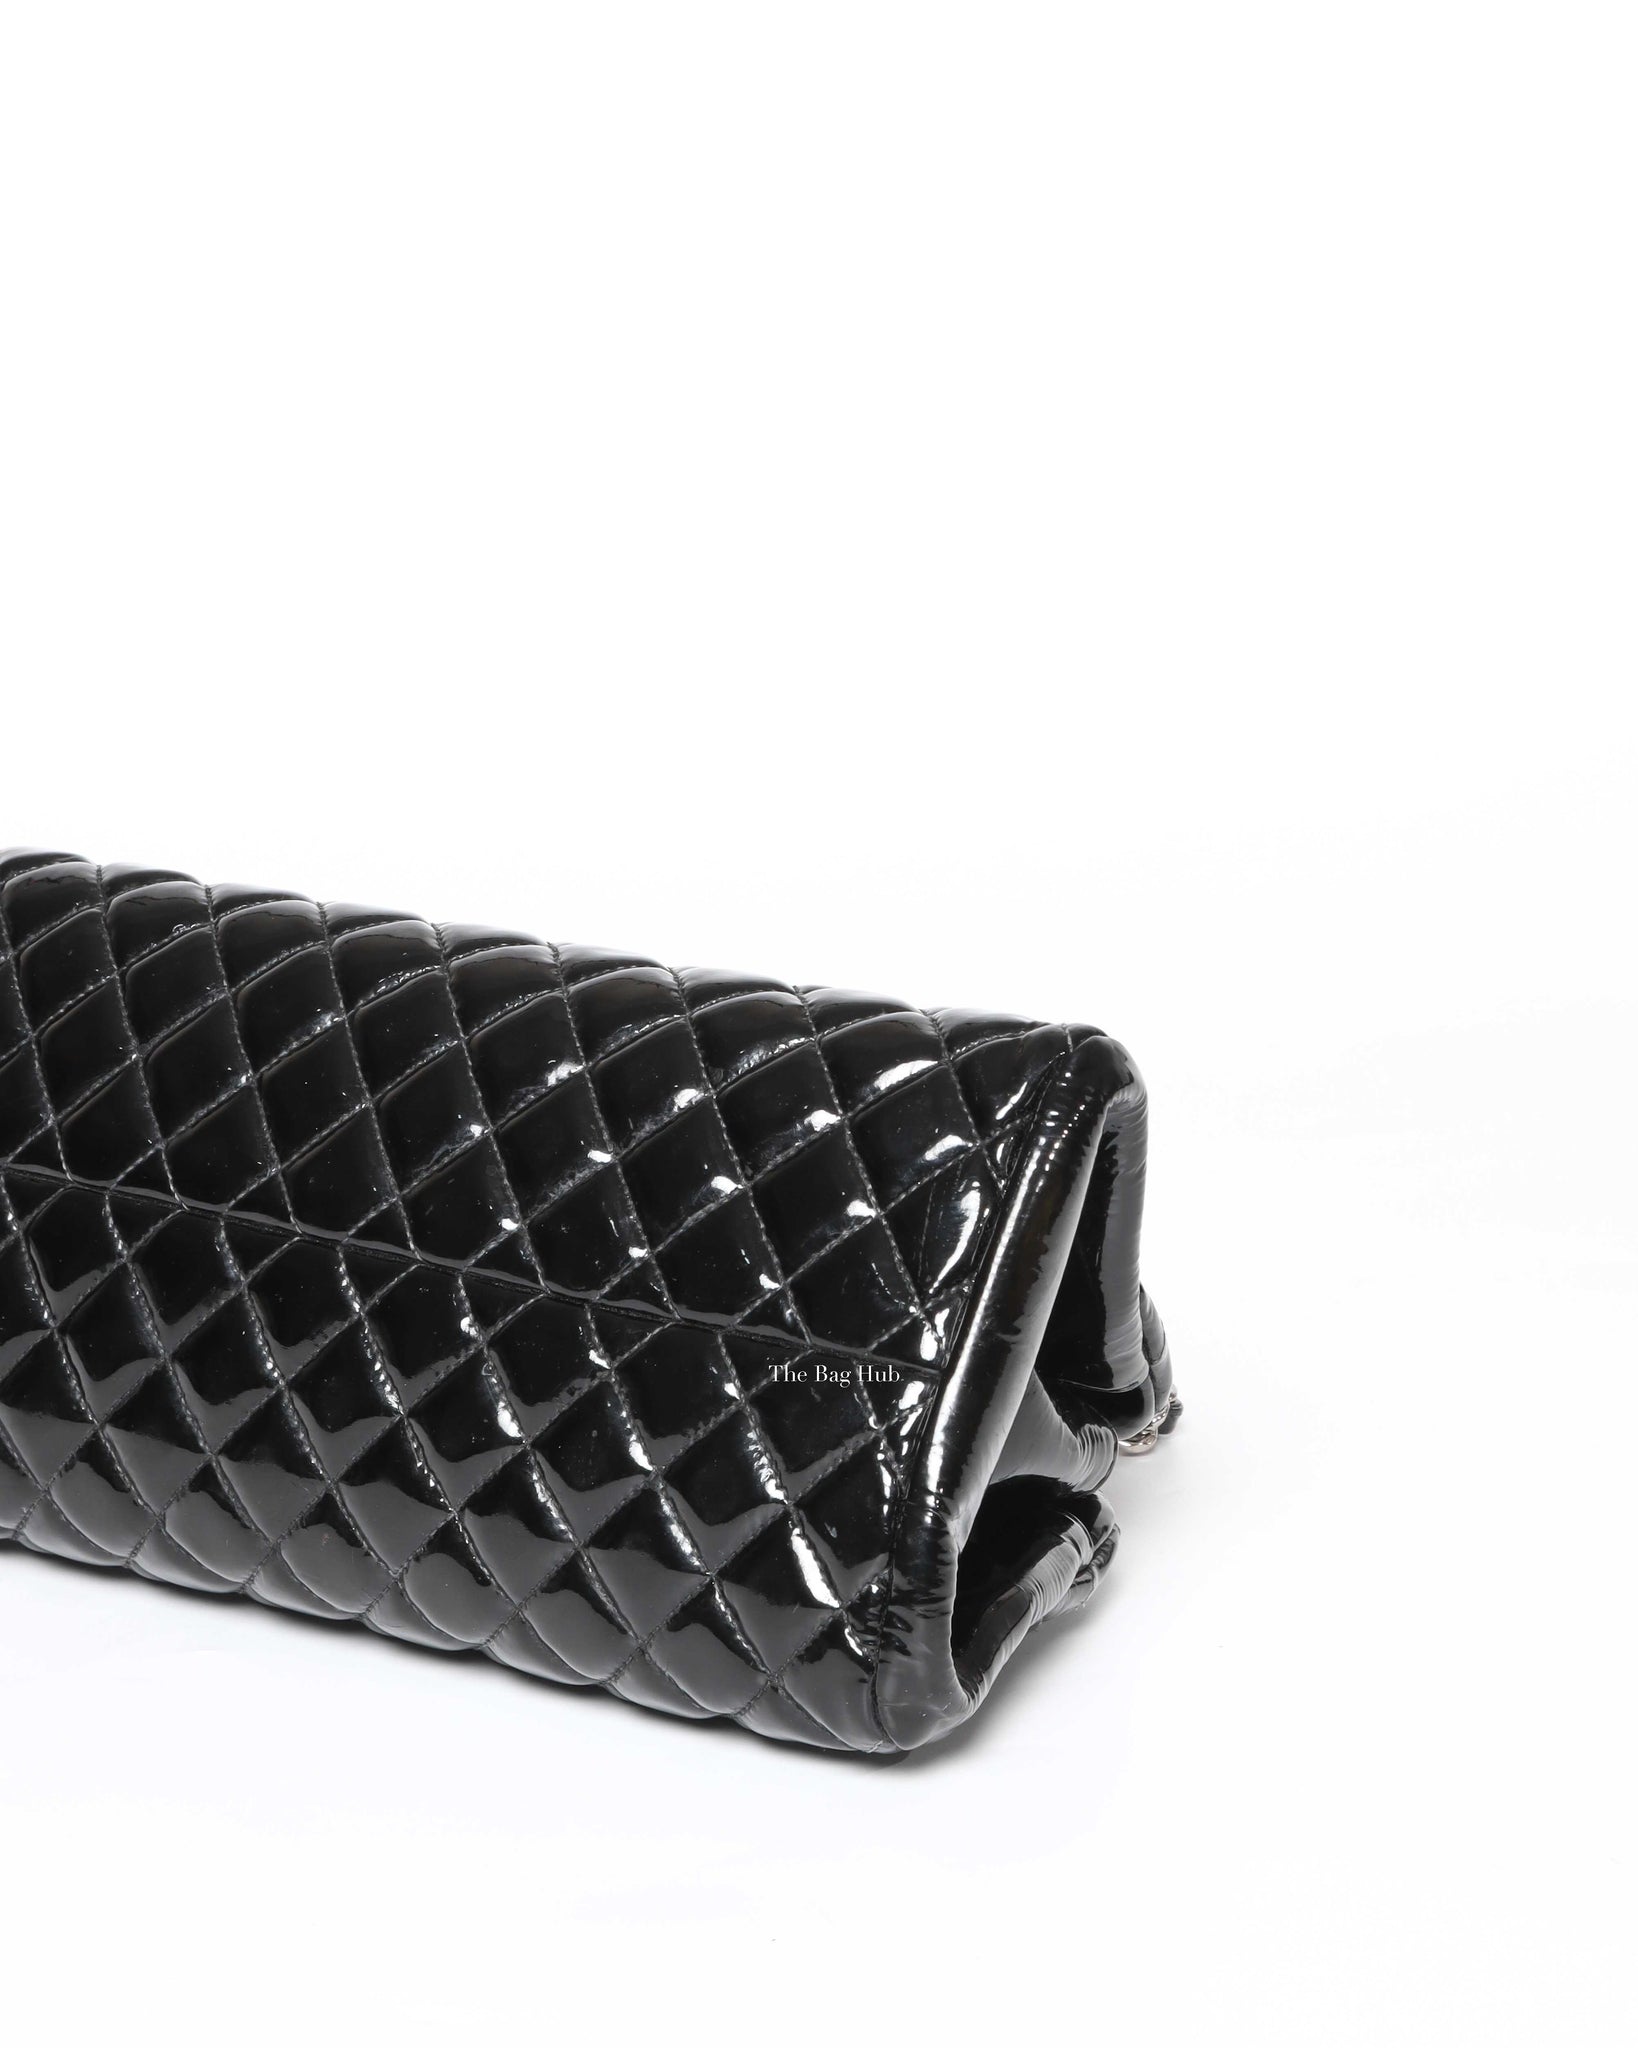 Chanel Black Patent Mademoiselle Shoulder Bag SHW - 9